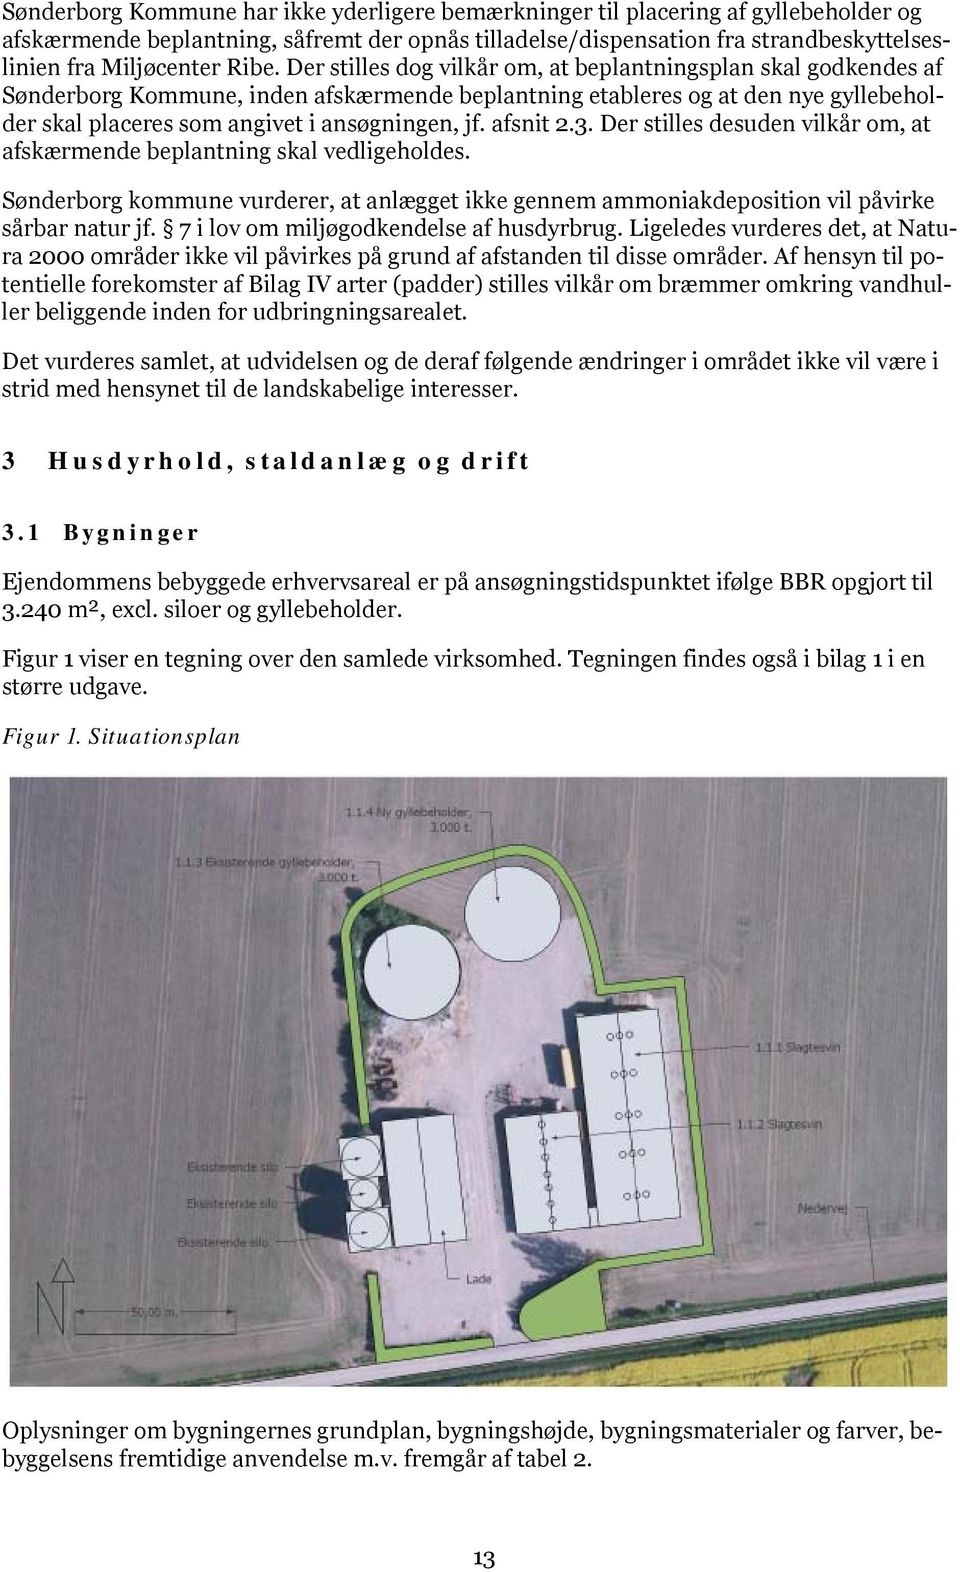 jf. afsnit 2.3. Der stilles desuden vilkår om, at afskærmende beplantning skal vedligeholdes. Sønderborg kommune vurderer, at anlægget ikke gennem ammoniakdeposition vil påvirke sårbar natur jf.